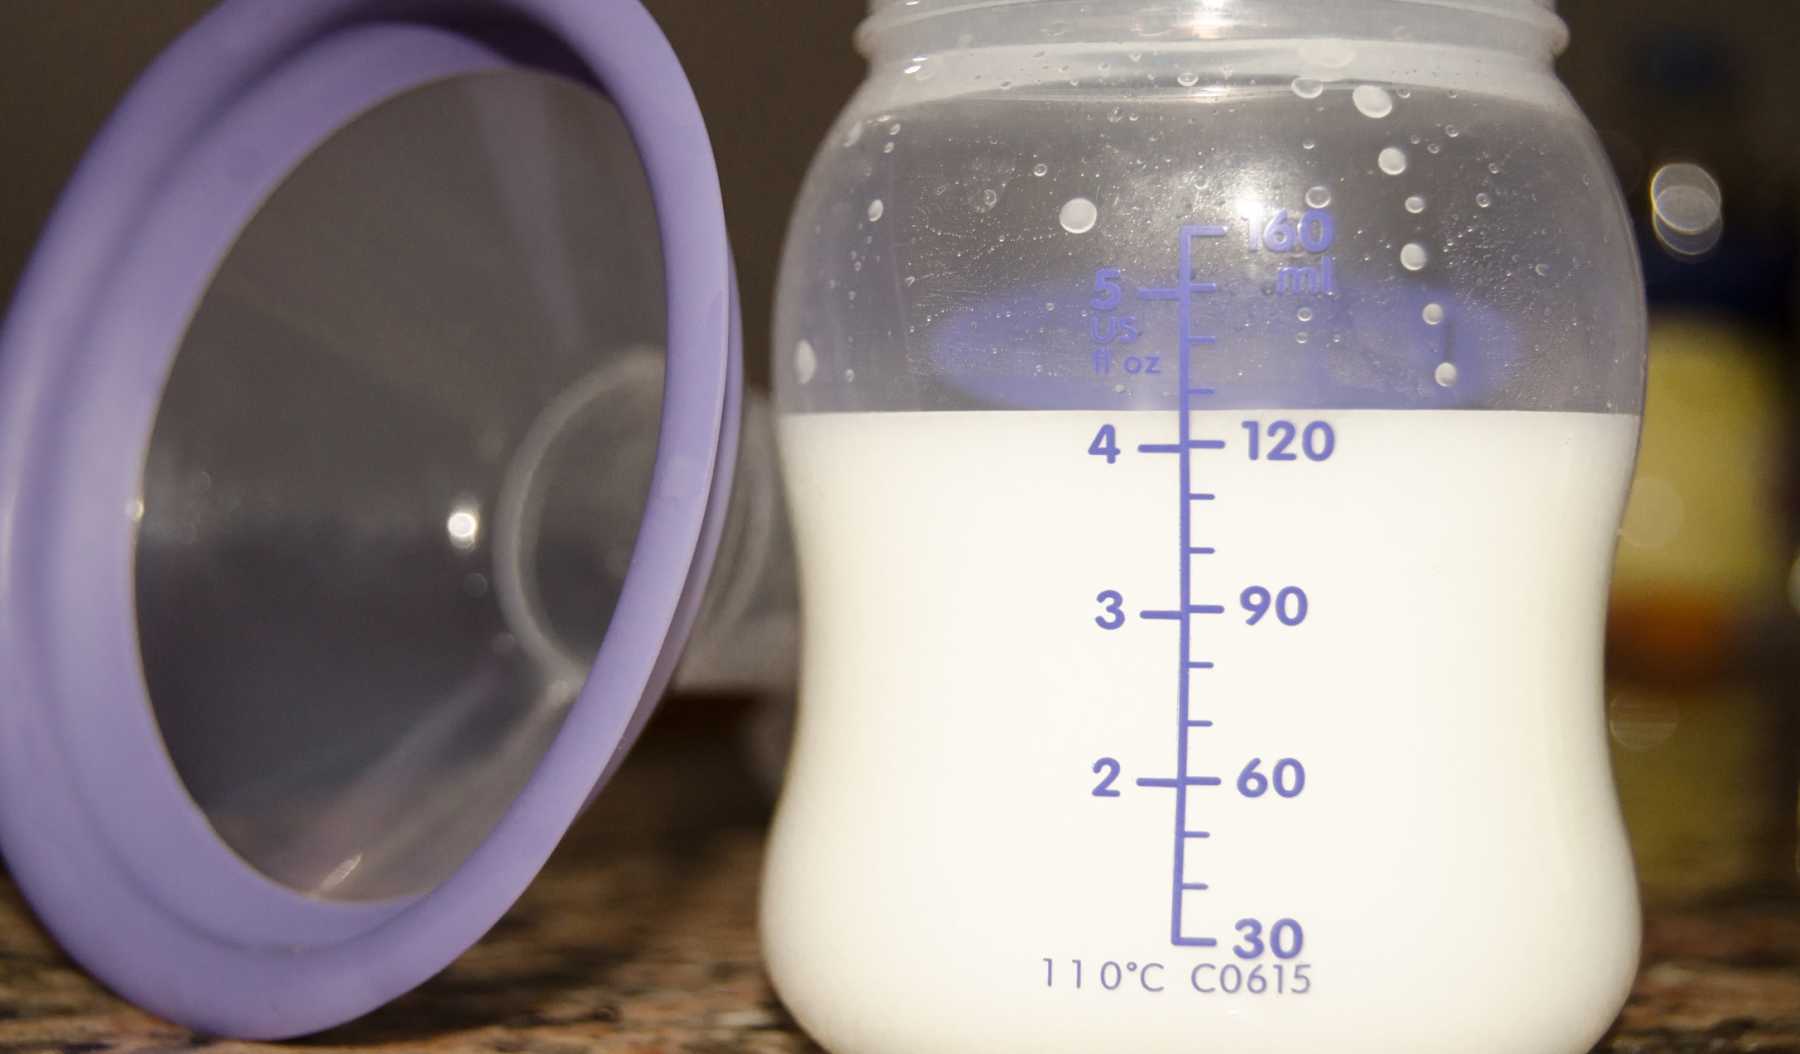 Pumping Breast Milk 101: Breastfeeding & Pumping